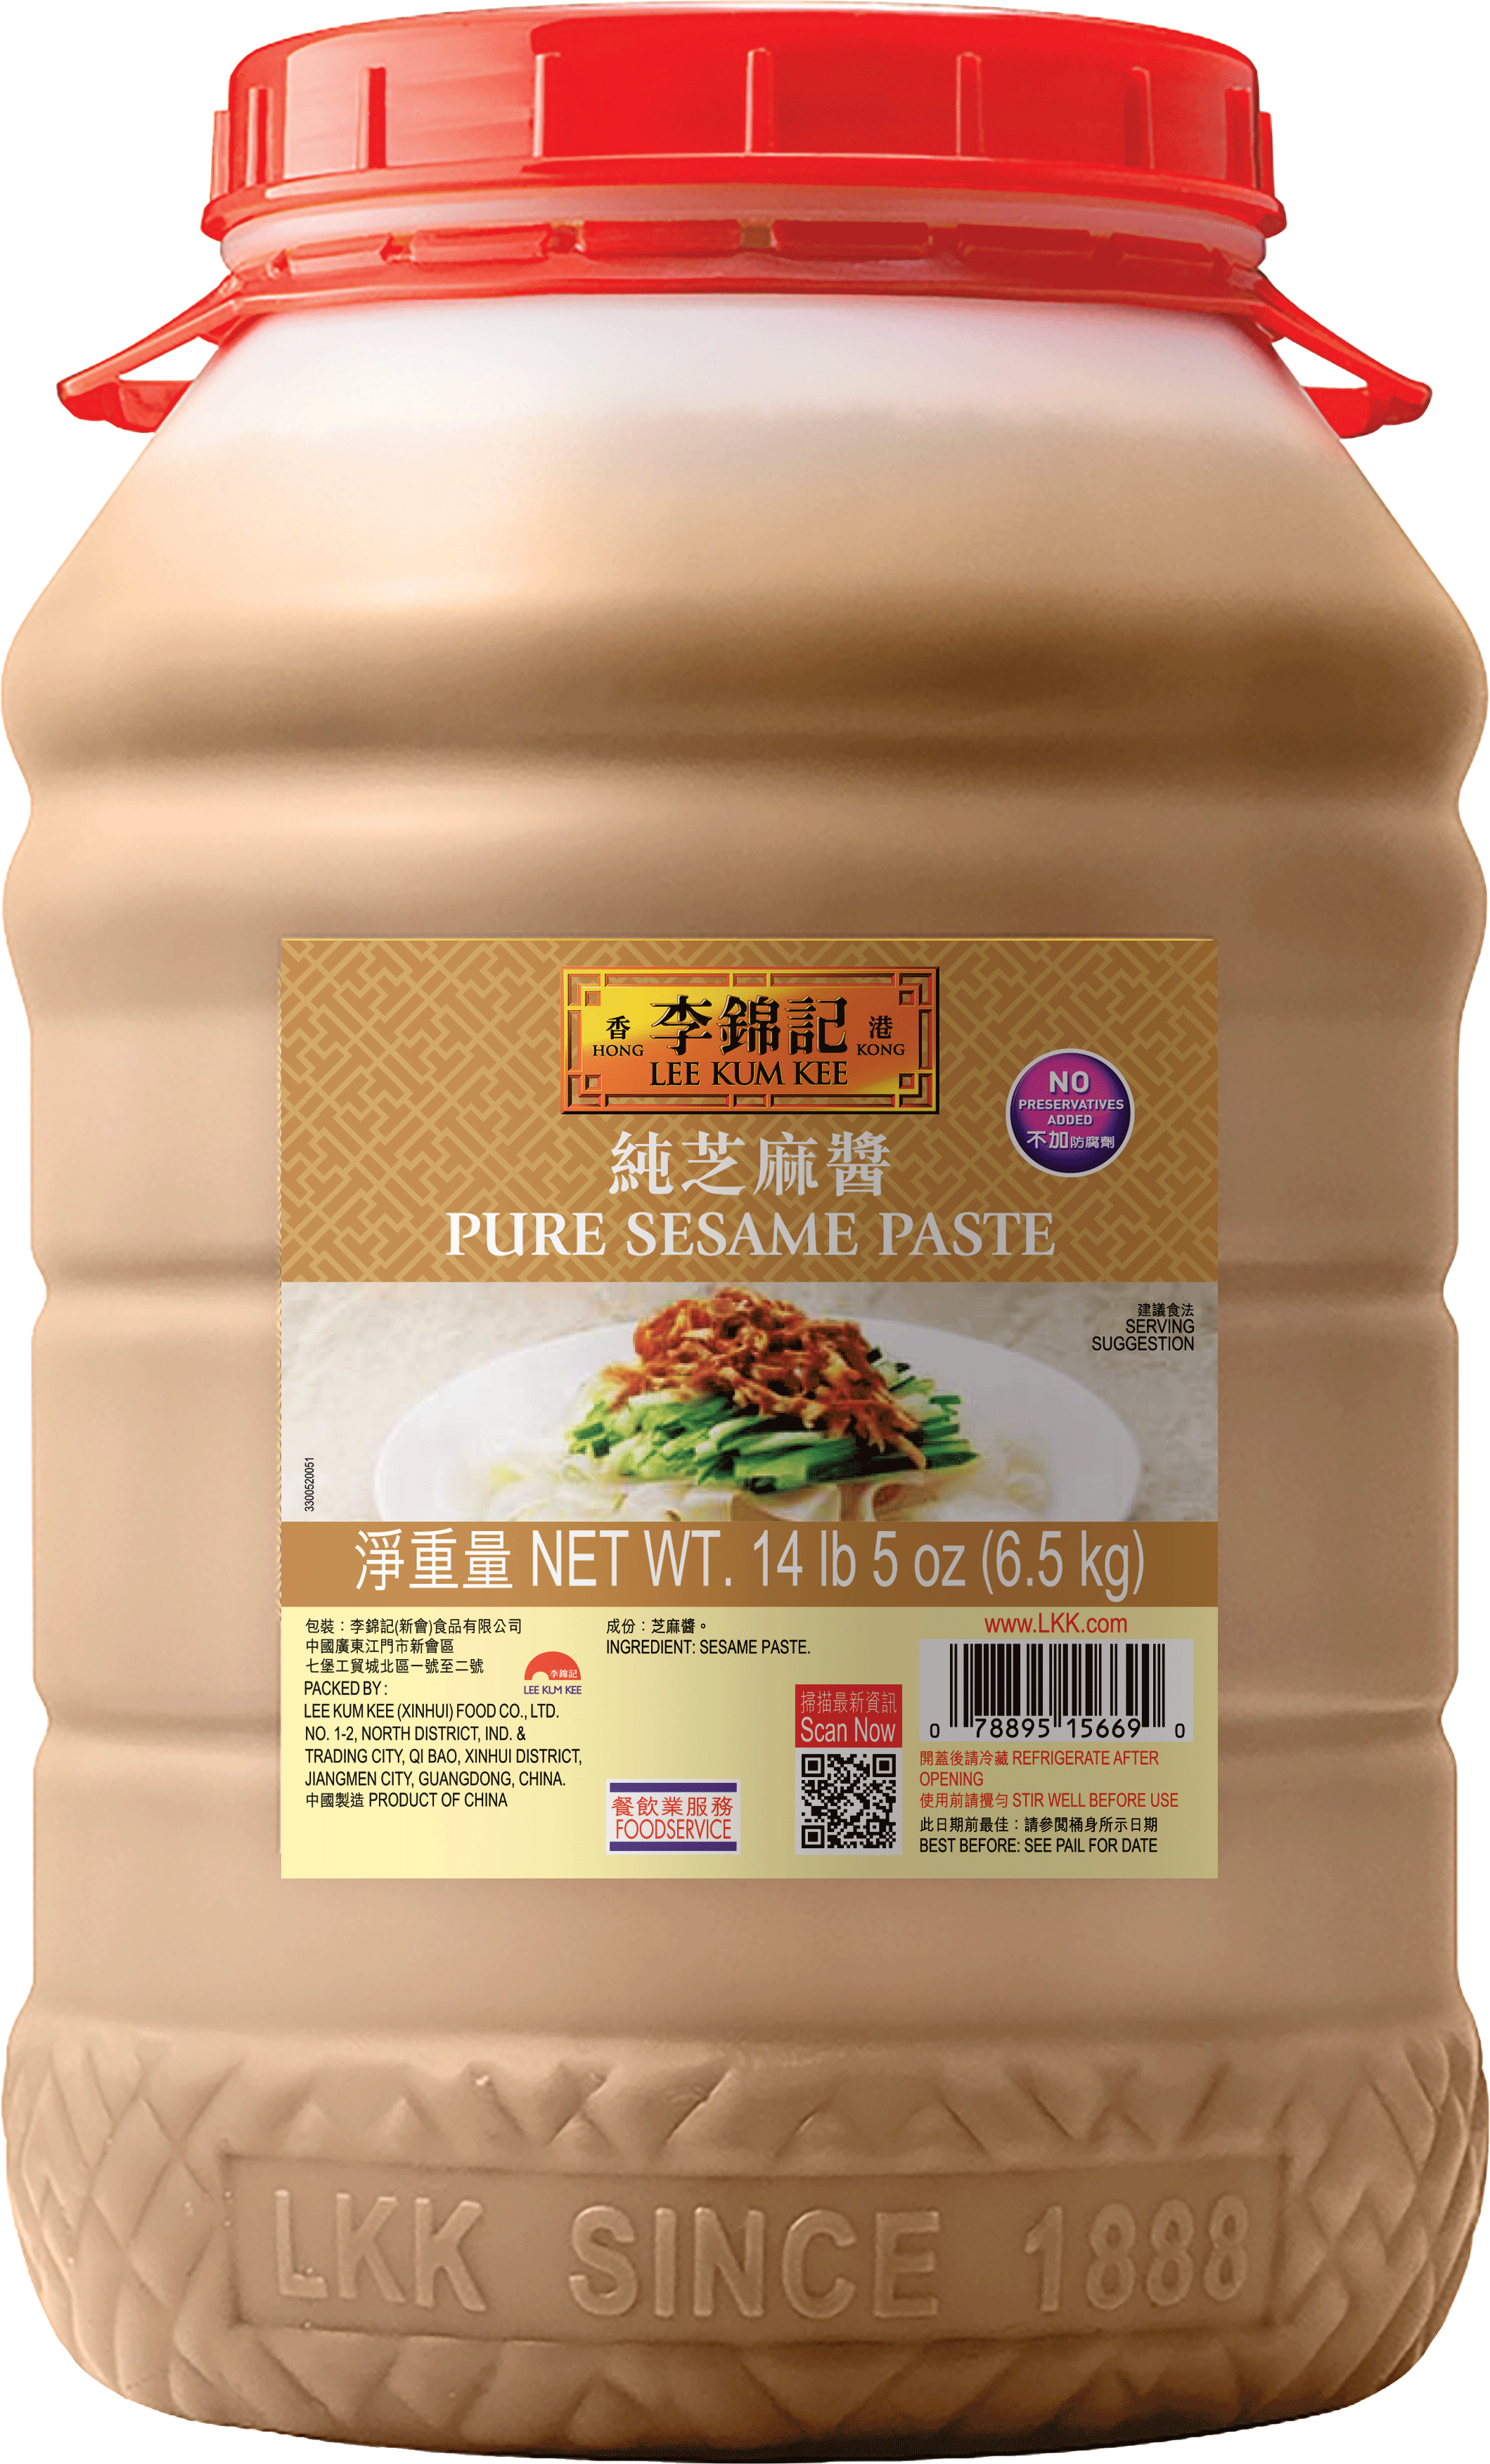 Pure Sesame Paste 14 lb 5 oz 65 kg